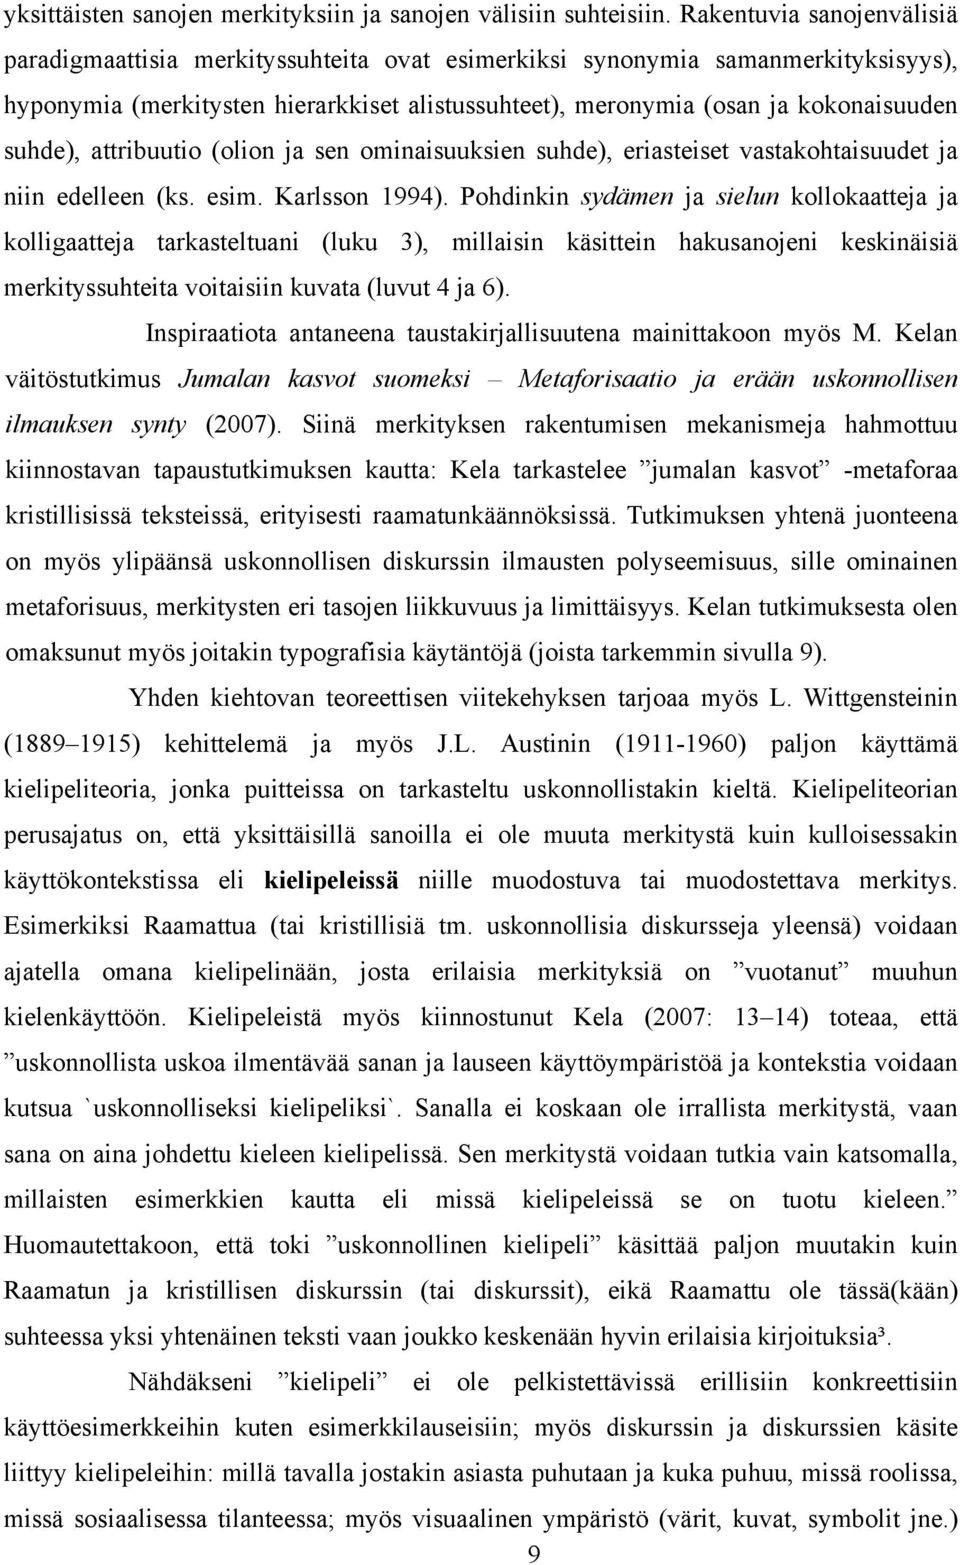 suhde), attribuutio (olion ja sen ominaisuuksien suhde), eriasteiset vastakohtaisuudet ja niin edelleen (ks. esim. Karlsson 1994).